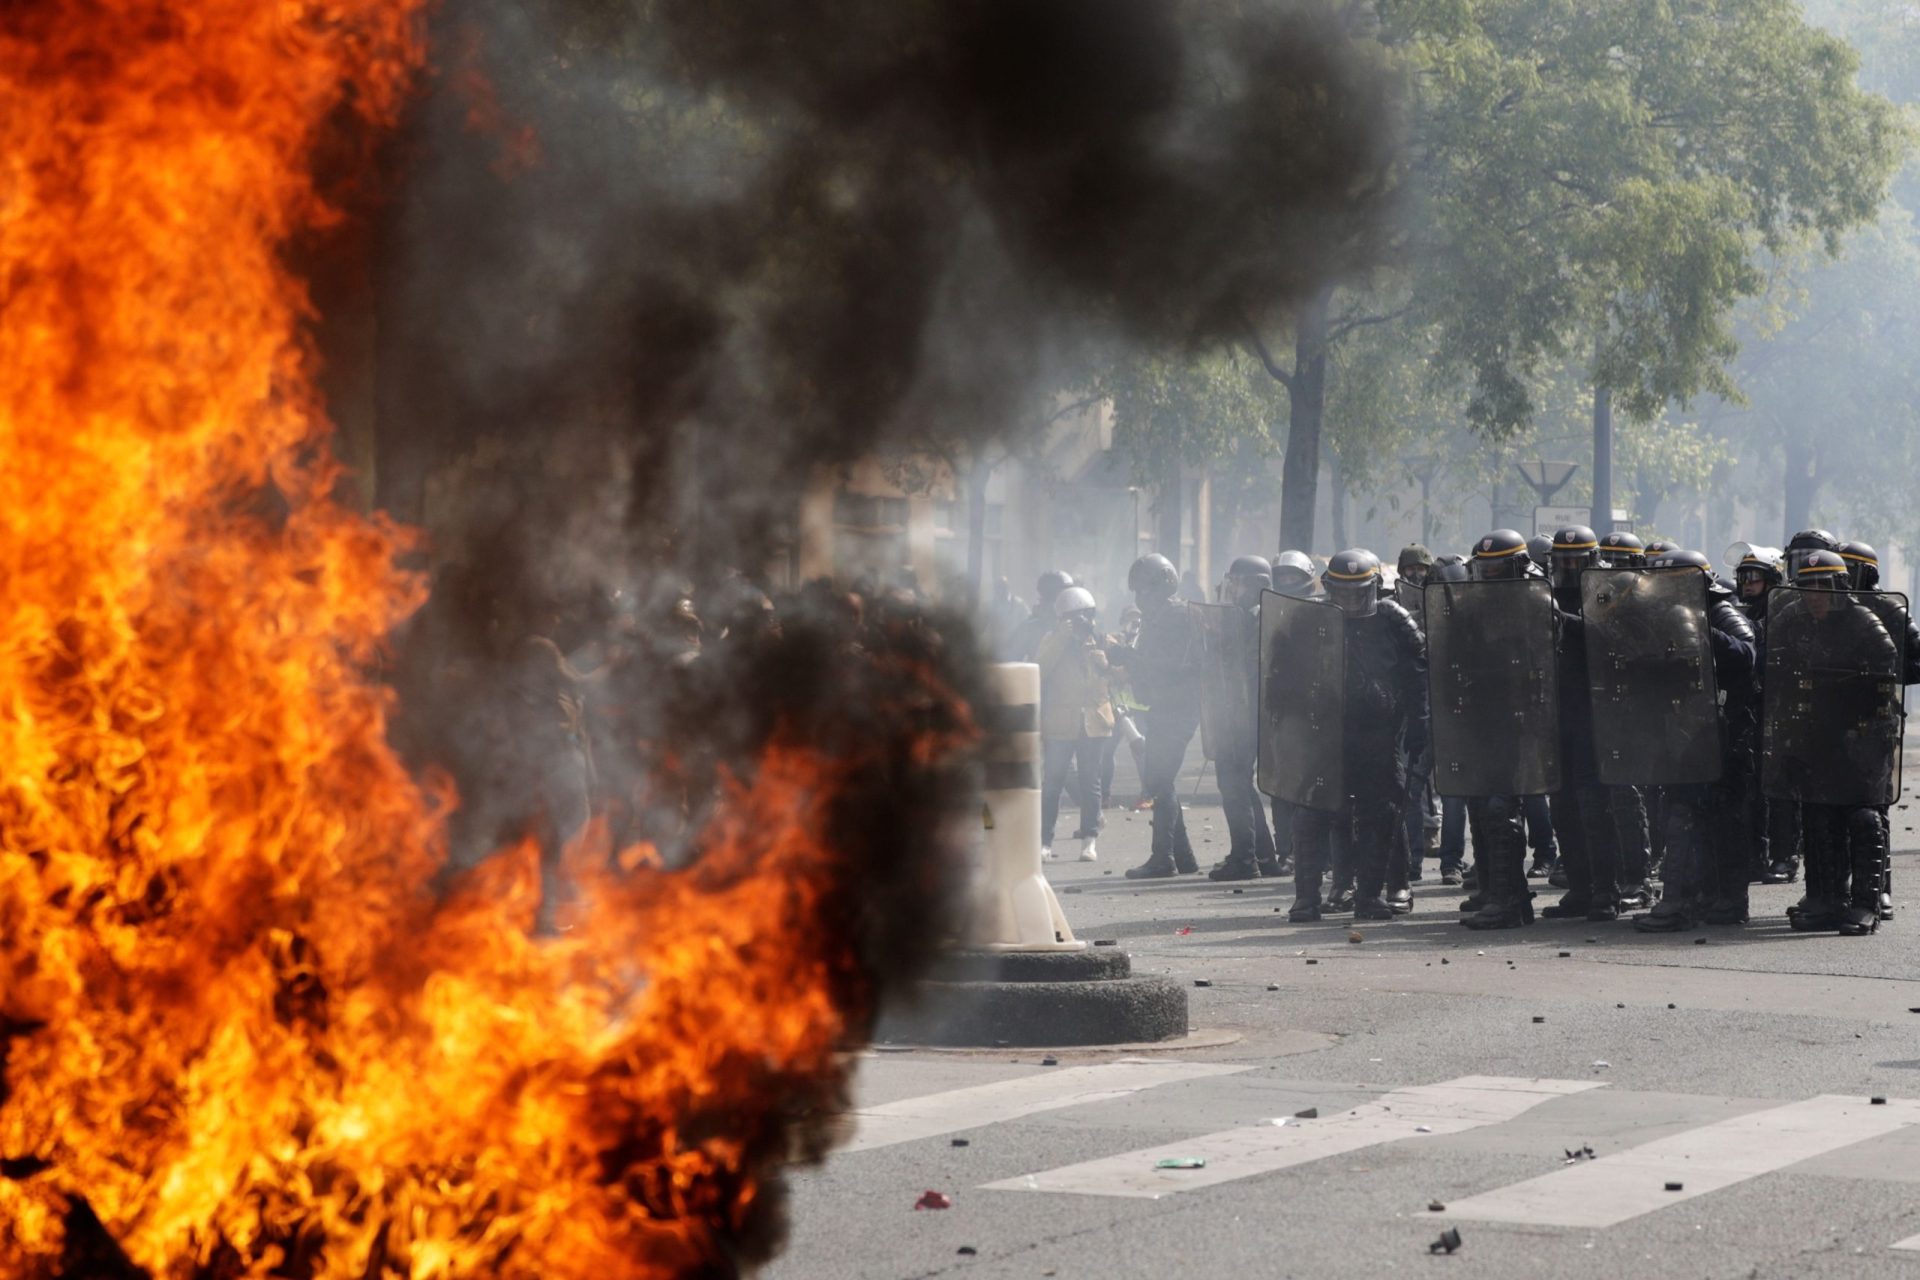 Tensão instalada em Paris. Detidos centenas de manifestantes | Fotogaleria